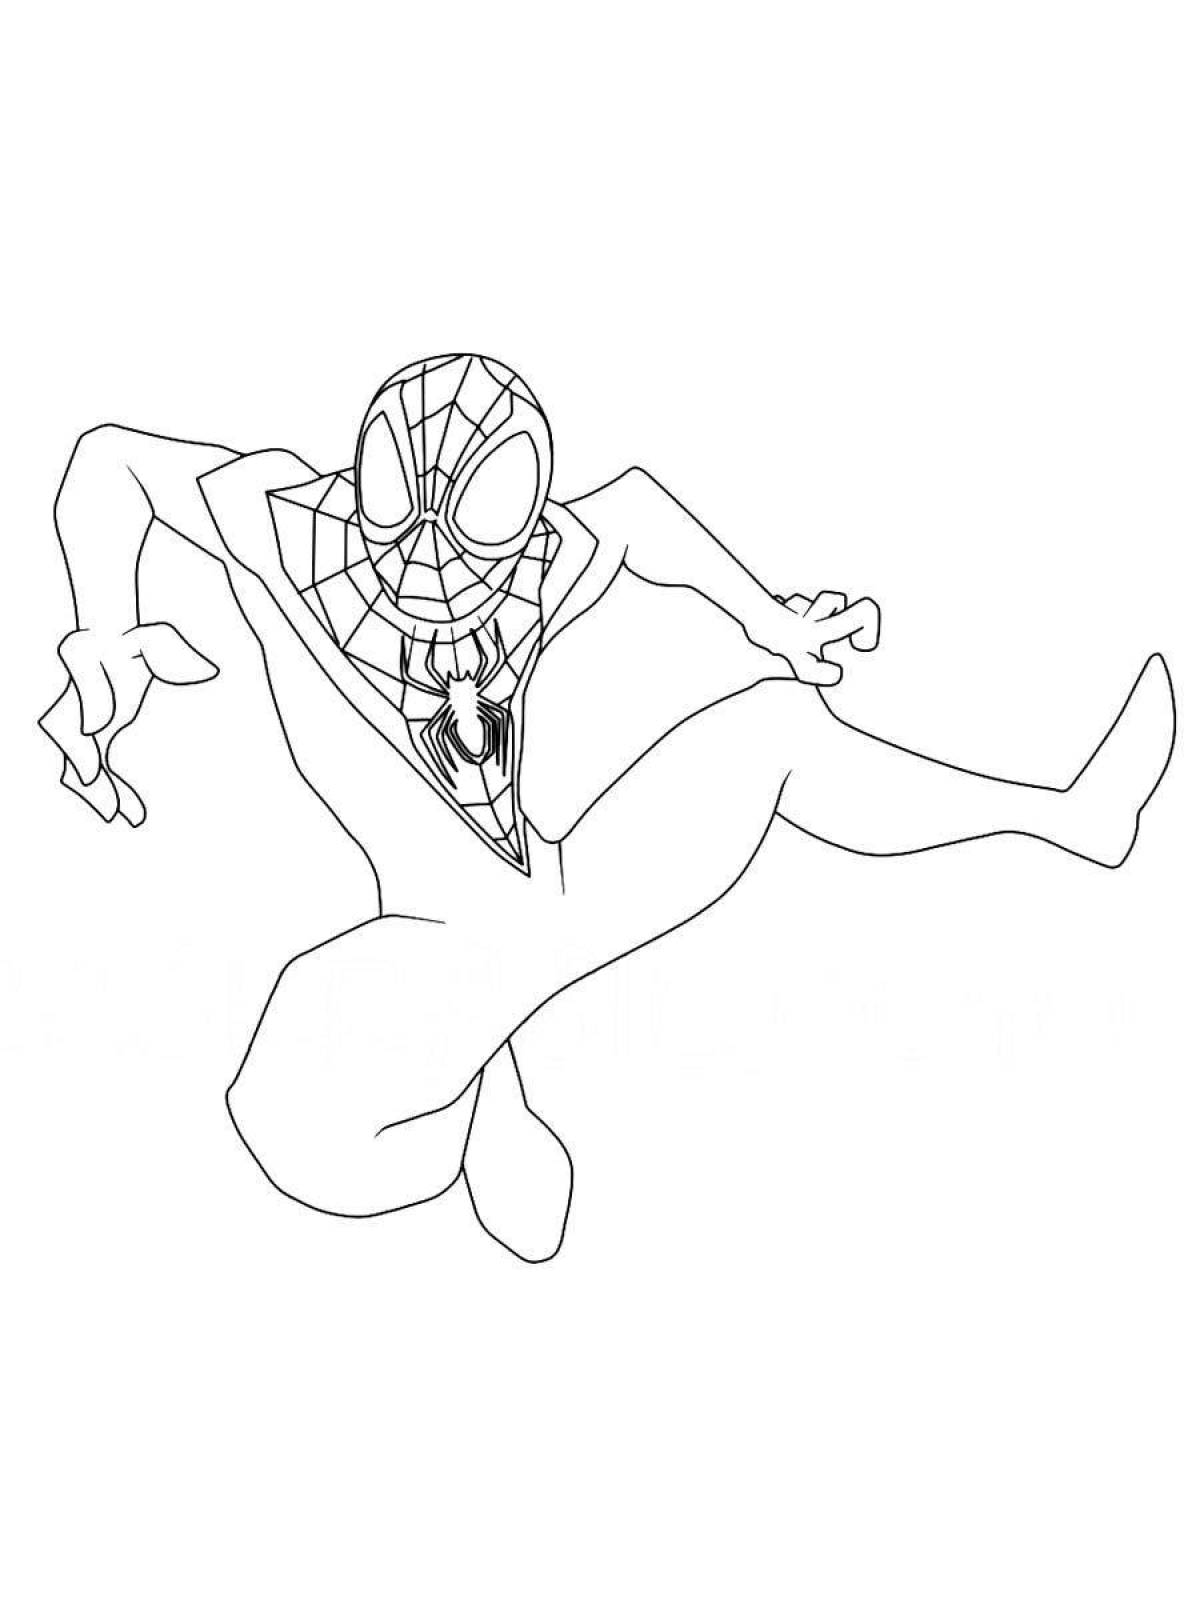 Веселая раскраска человек-паук майлз моралес